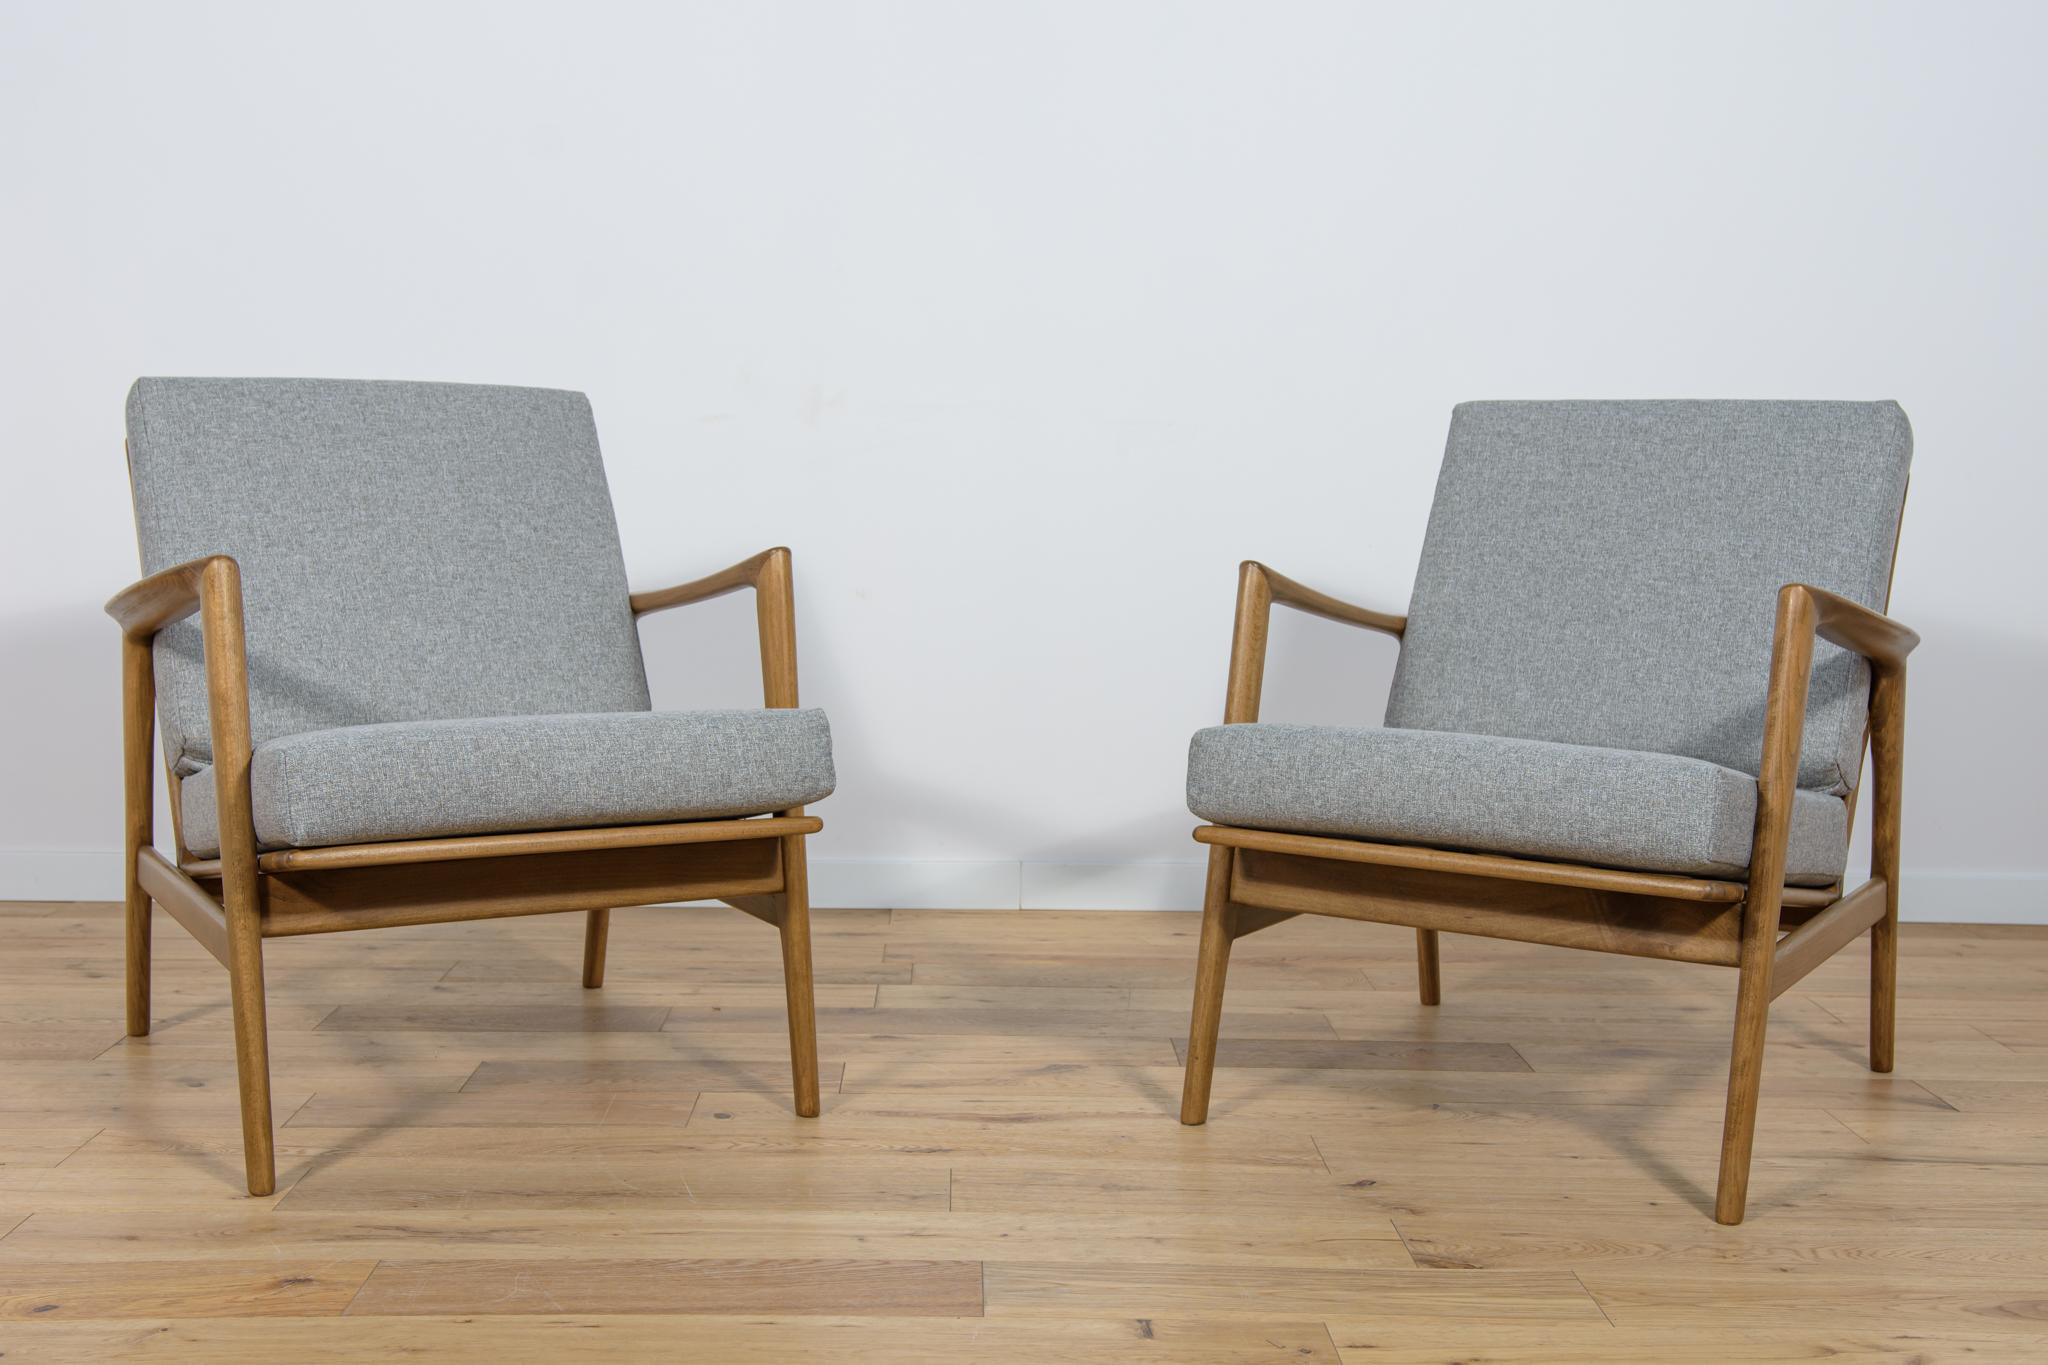 Dieses Sesselpaar wurde in den 60er Jahren von der polnischen Möbelfabrik Swarzędzka hergestellt und ist mit neuen Polstern in einem hochwertigen dunkelgrauen Stoff bezogen. Der Buchenrahmen wurde gereinigt, mit einer nussbaumfarbenen Beize